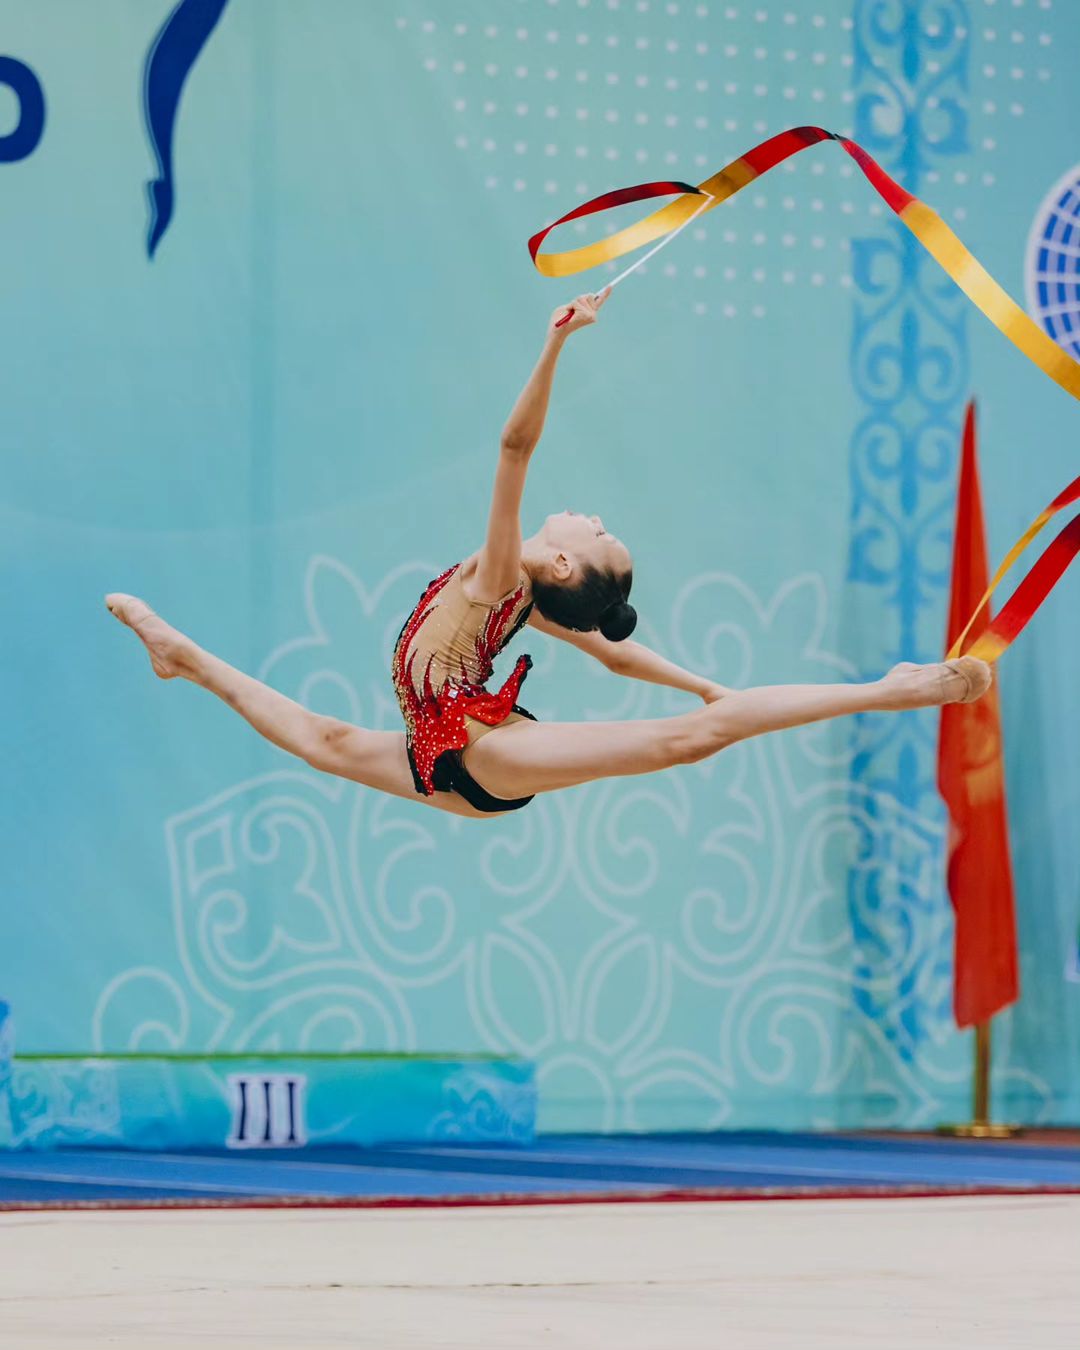 Астана төрінде жалауын желбіреткен көркем гимнастикадан халықаралық турнирдің жарқын сәттерін еске түсірейік.